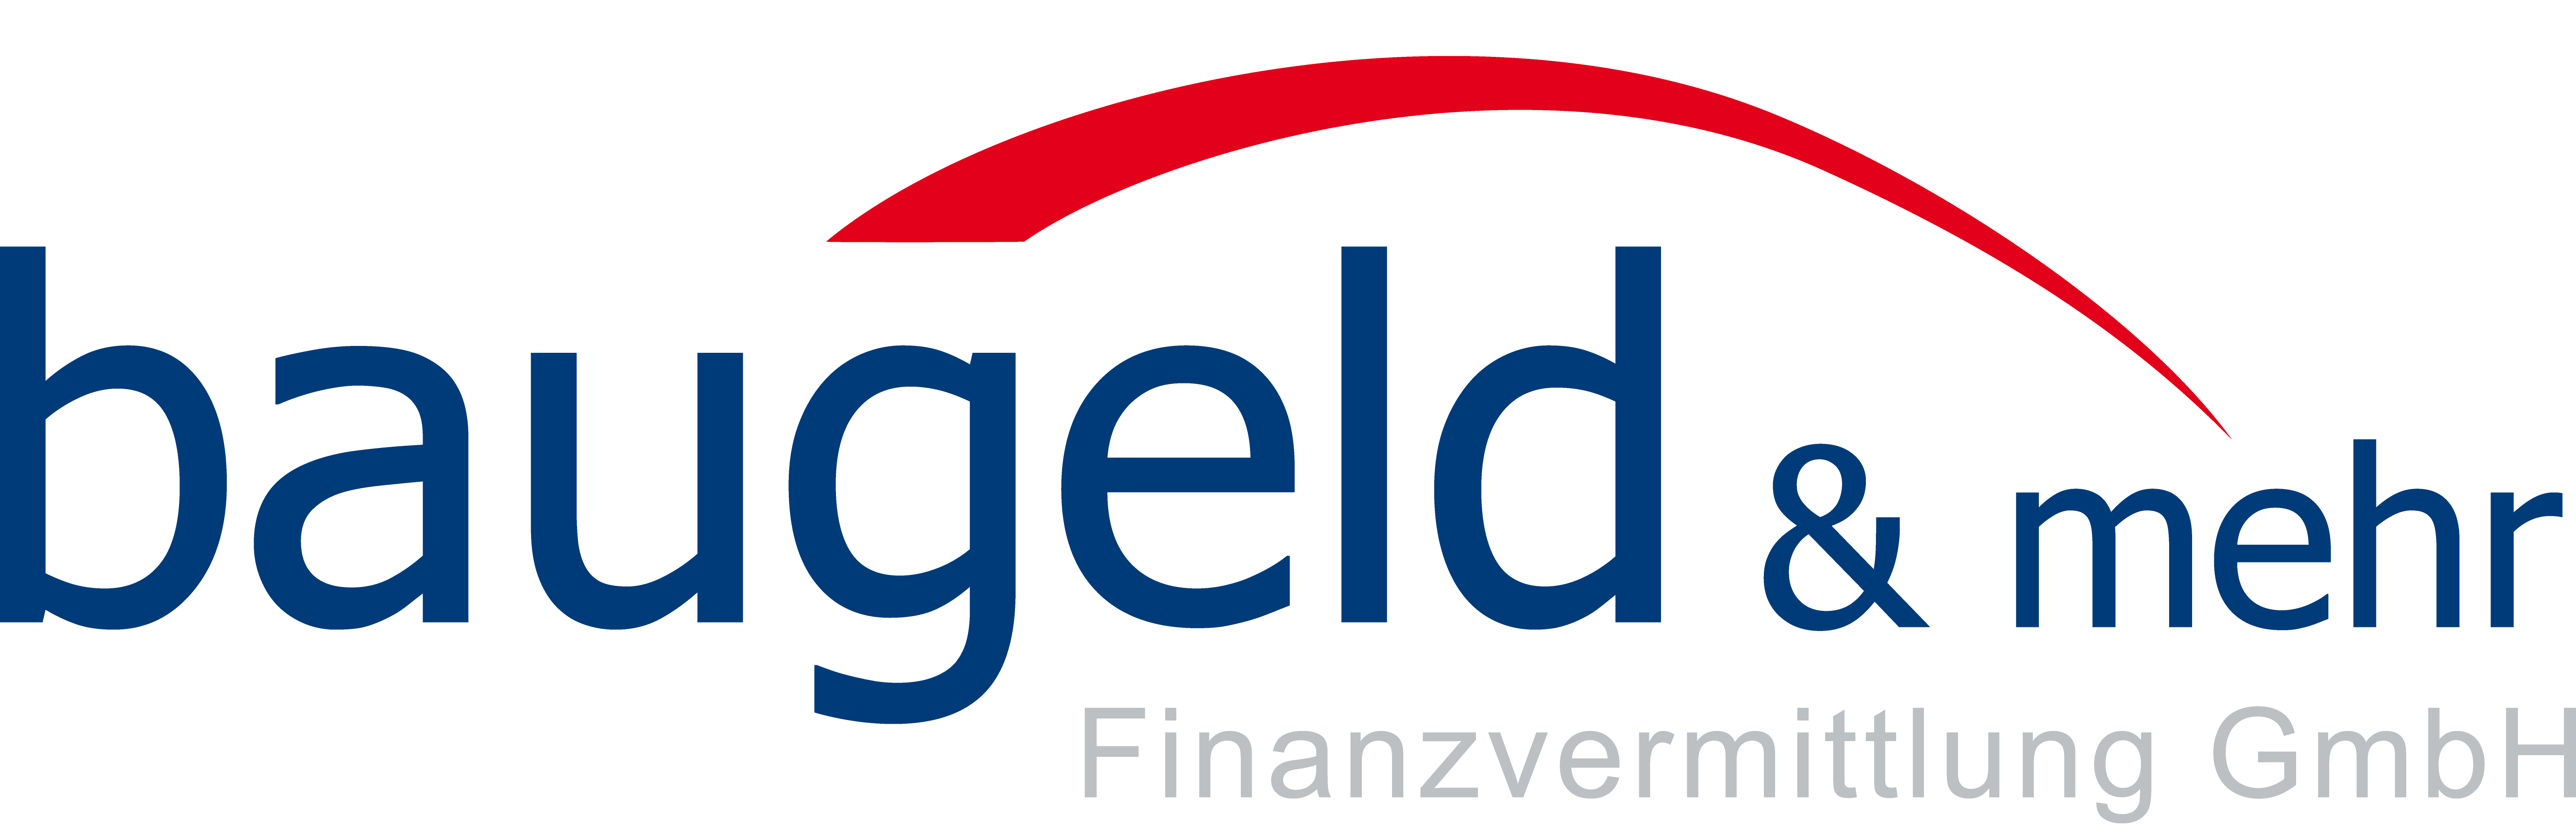 baugeld & mehr Finanzvermittlung GmbH - Ihr Baufinanzierer seit 2002